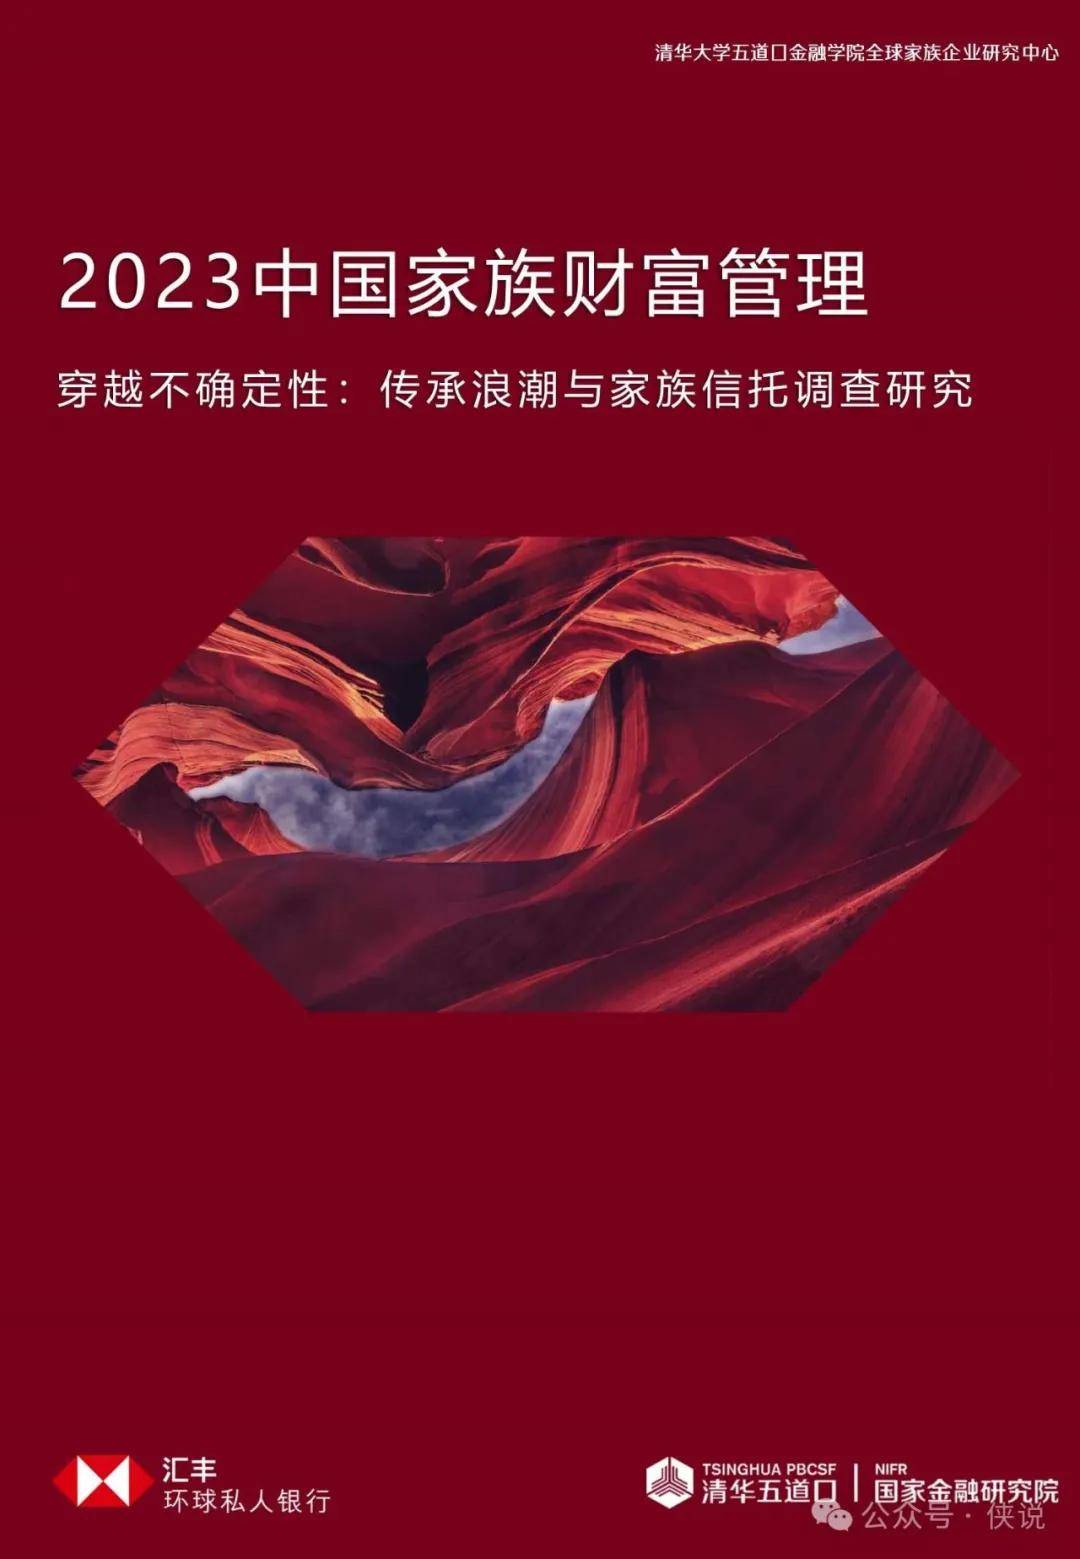 清华五道口：2023中国家族财富管理报告 